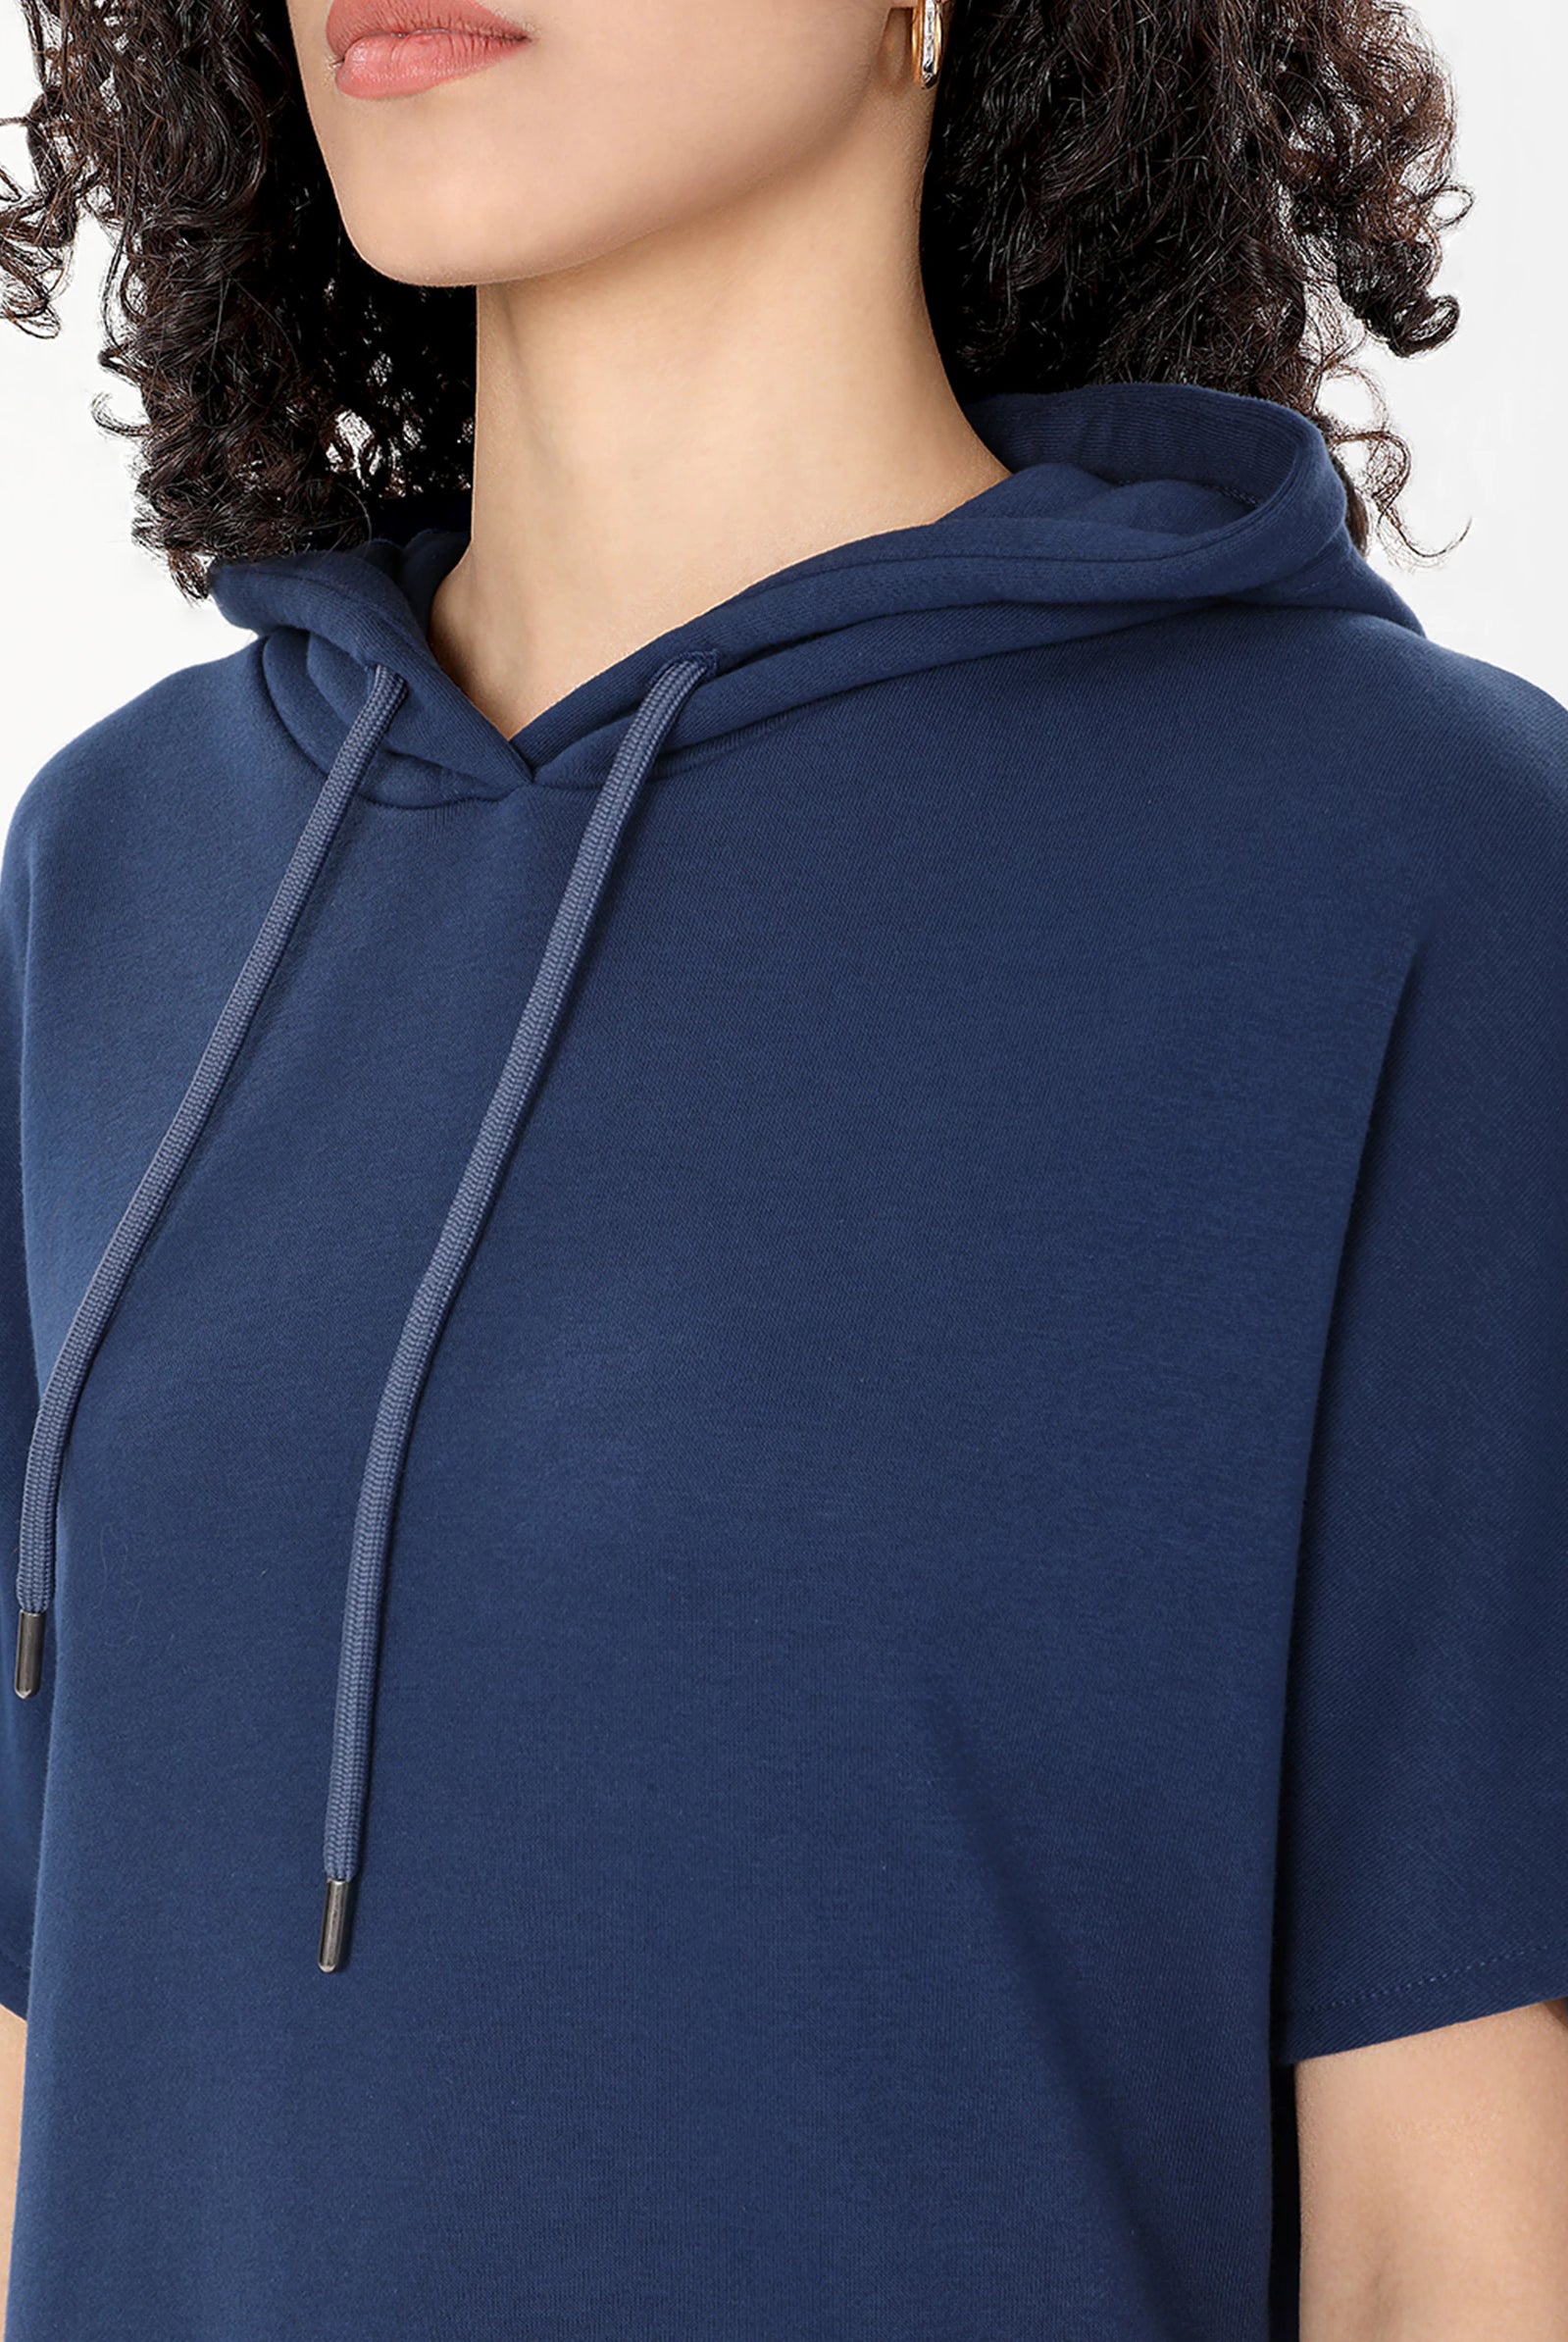 shop blue long hoodie